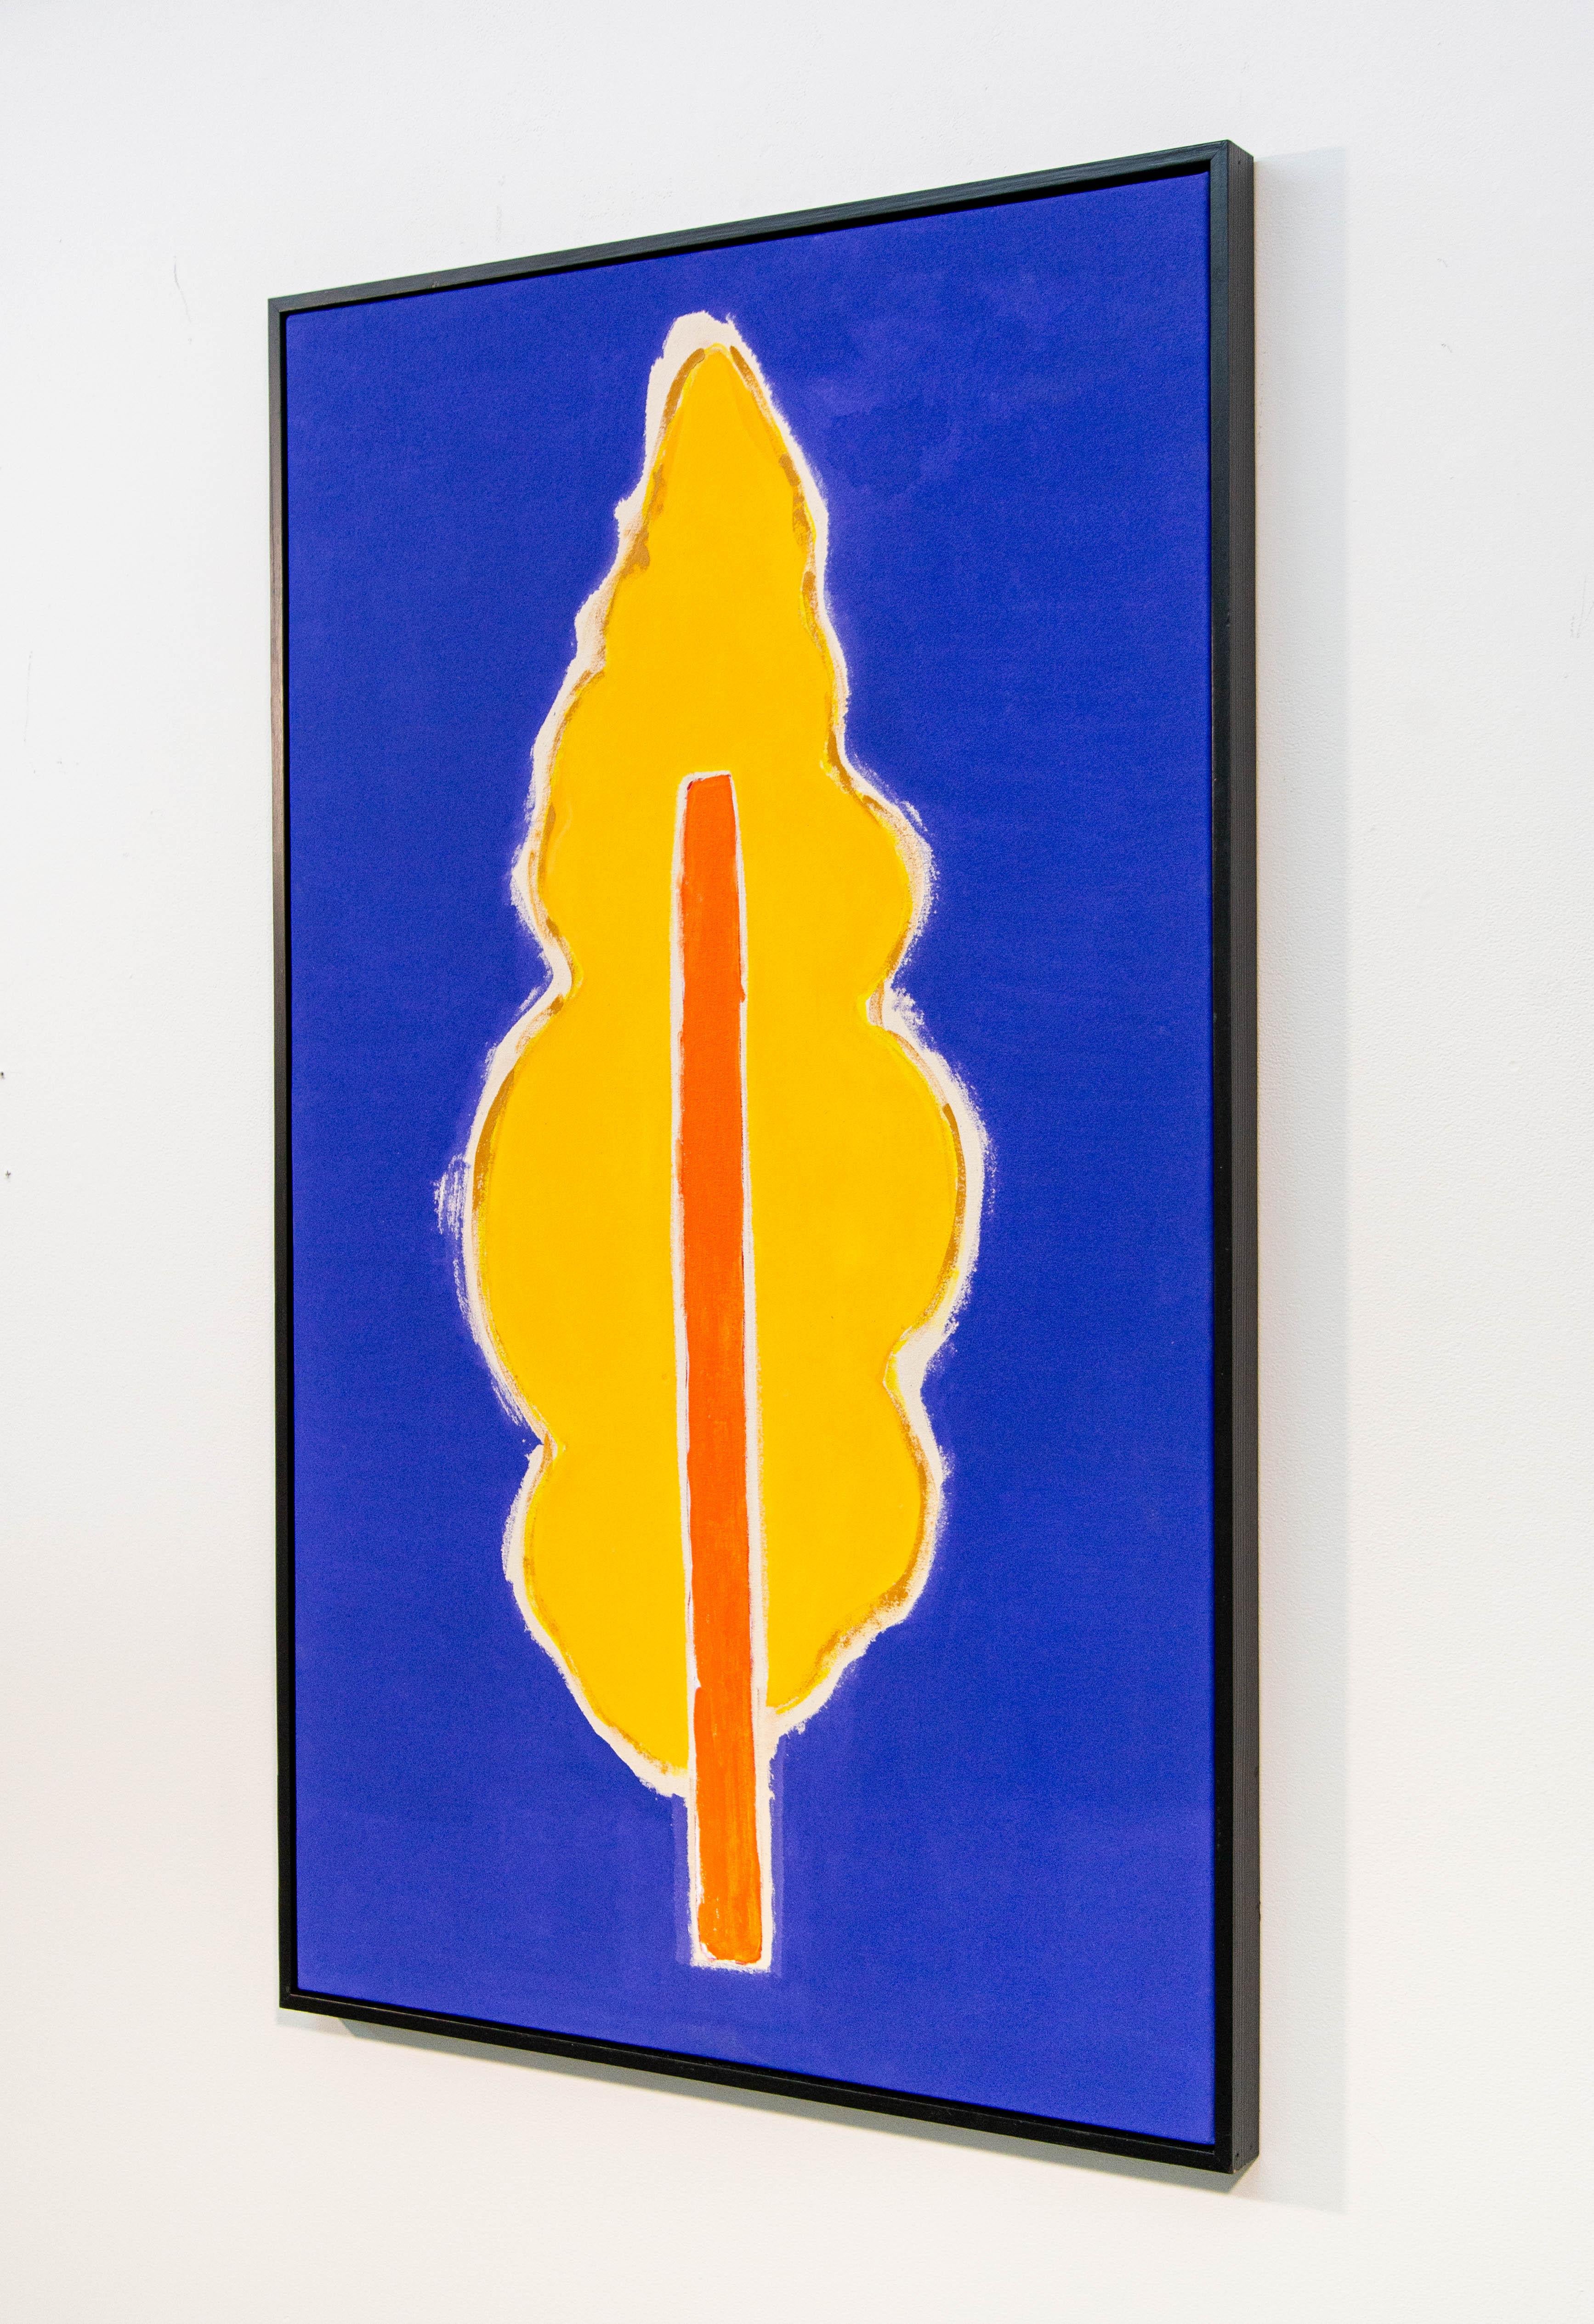 Guest - lumineux, coloré, minimaliste, arbre abstrait, acrylique sur toile - Painting de Pat Service